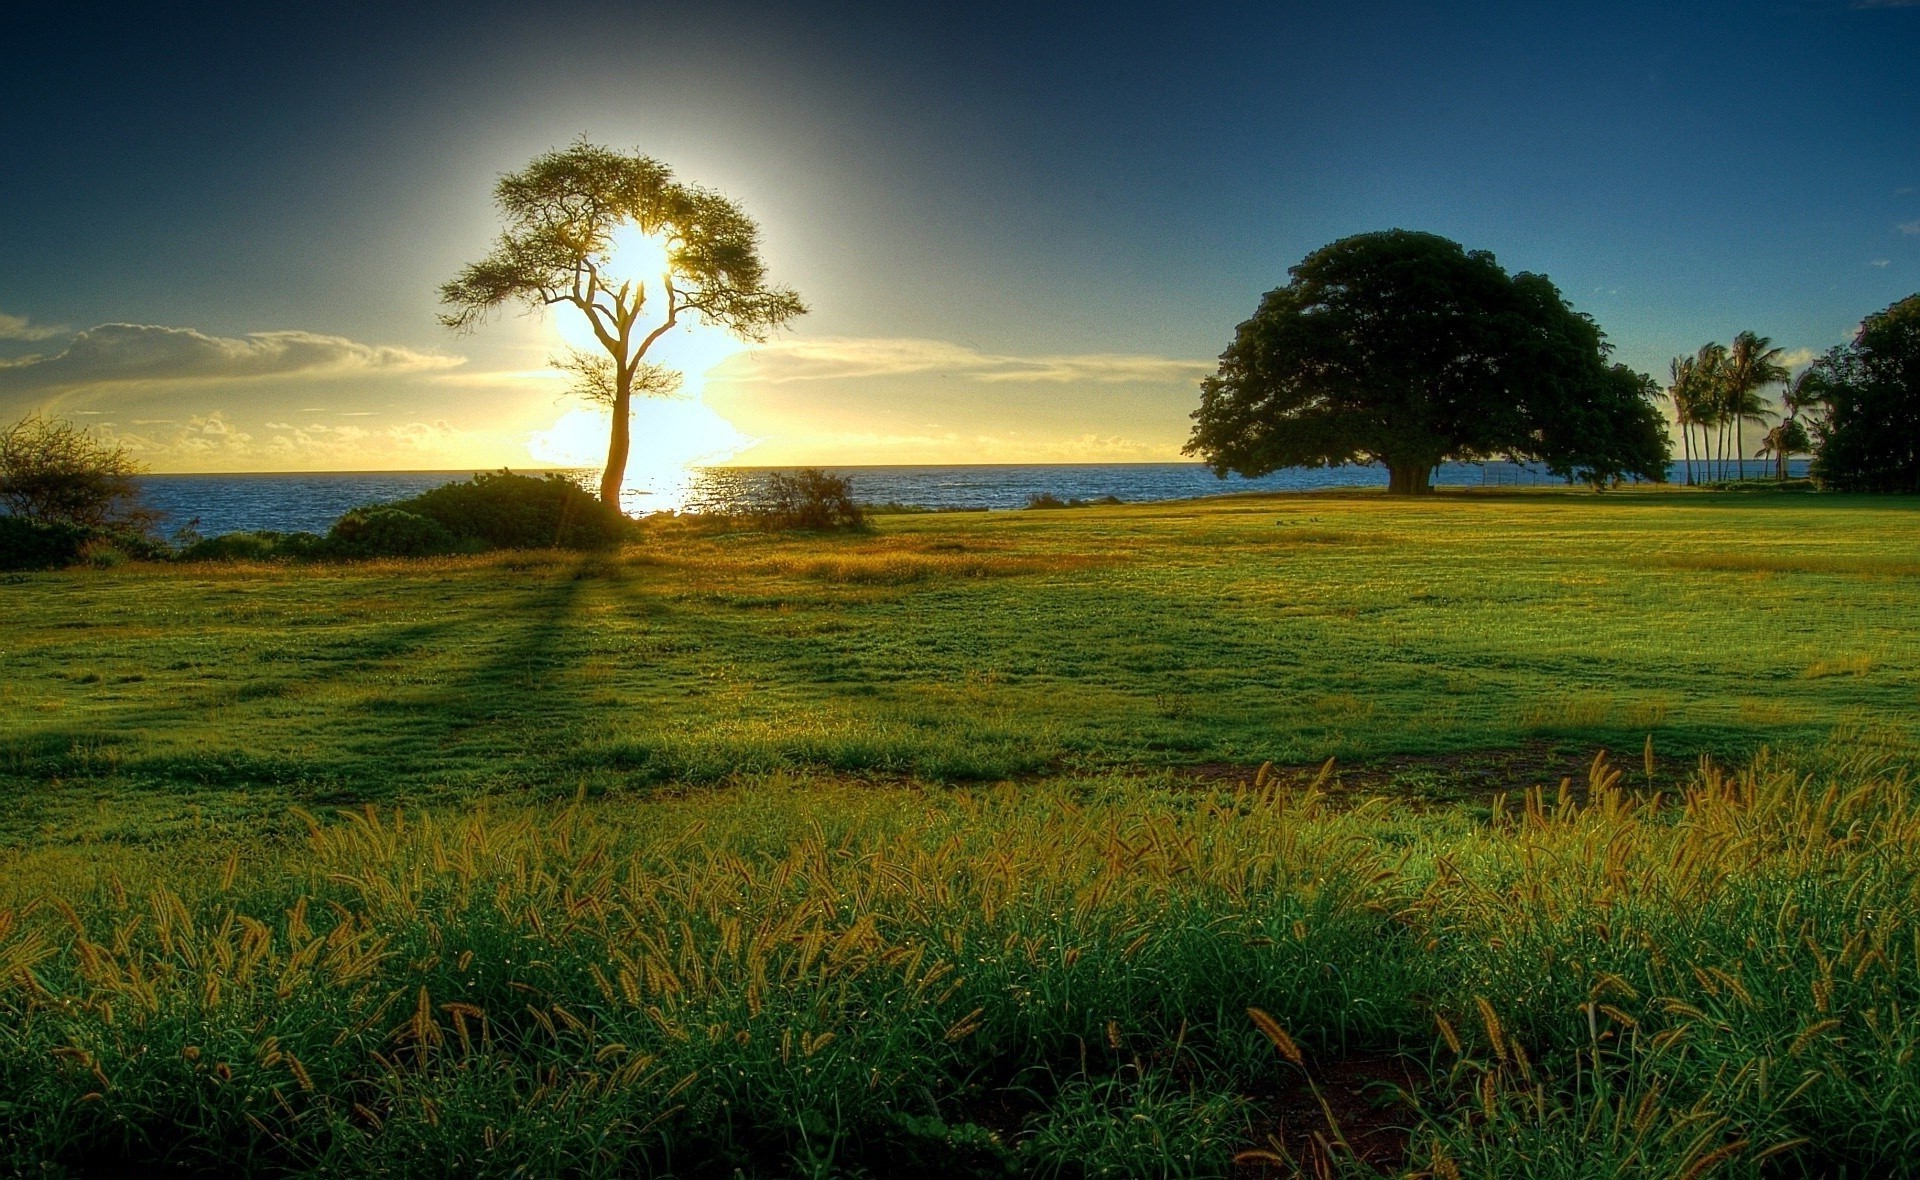 поля луга и долины пейзаж закат природа рассвет поле трава солнце небо дерево сельское хозяйство сельских на открытом воздухе сельской местности лето вечером хорошую погоду ферма